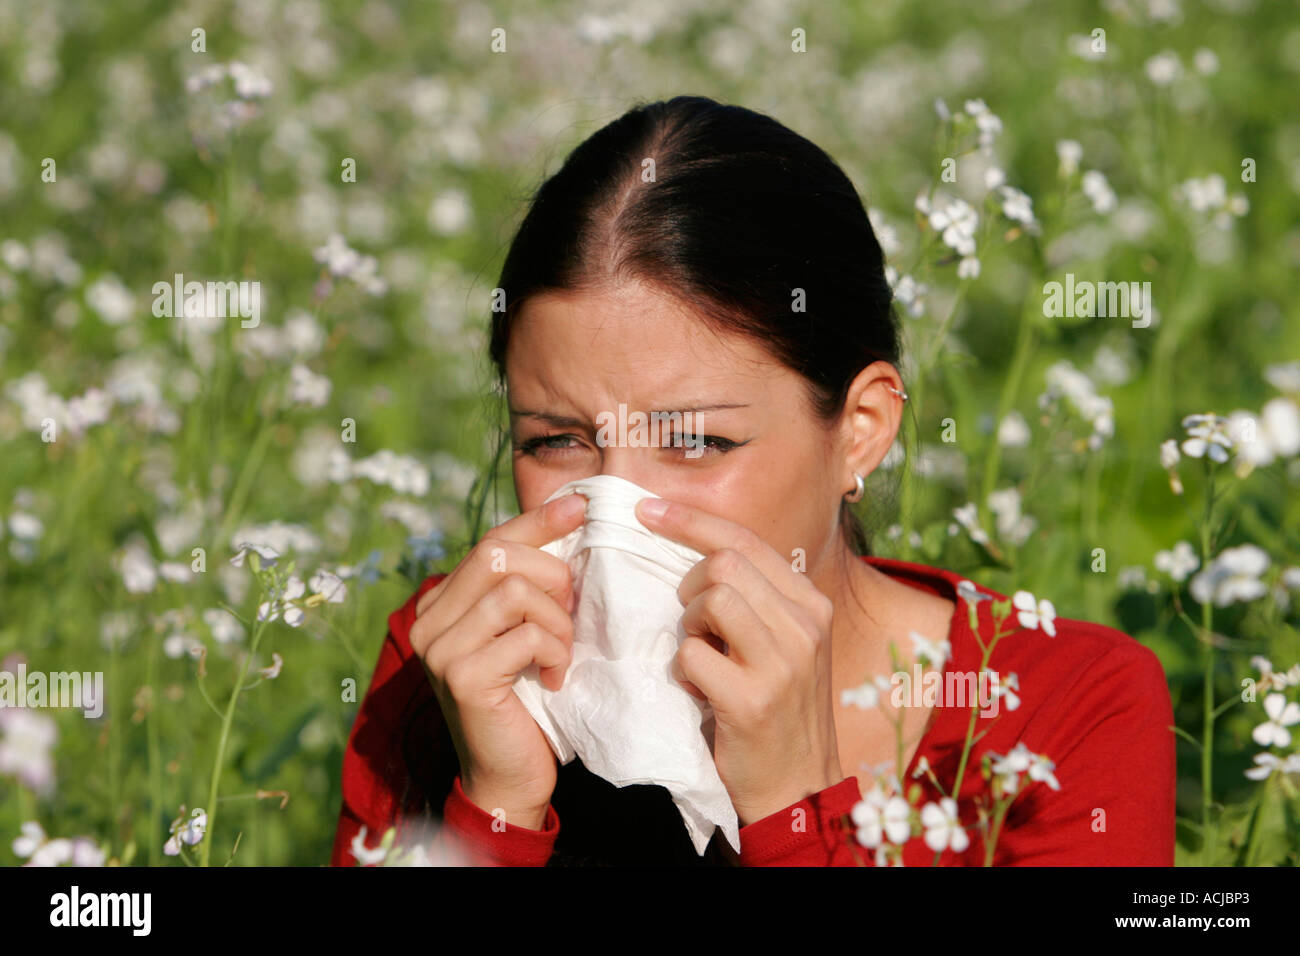 Как избавиться от аллергии в домашних условиях